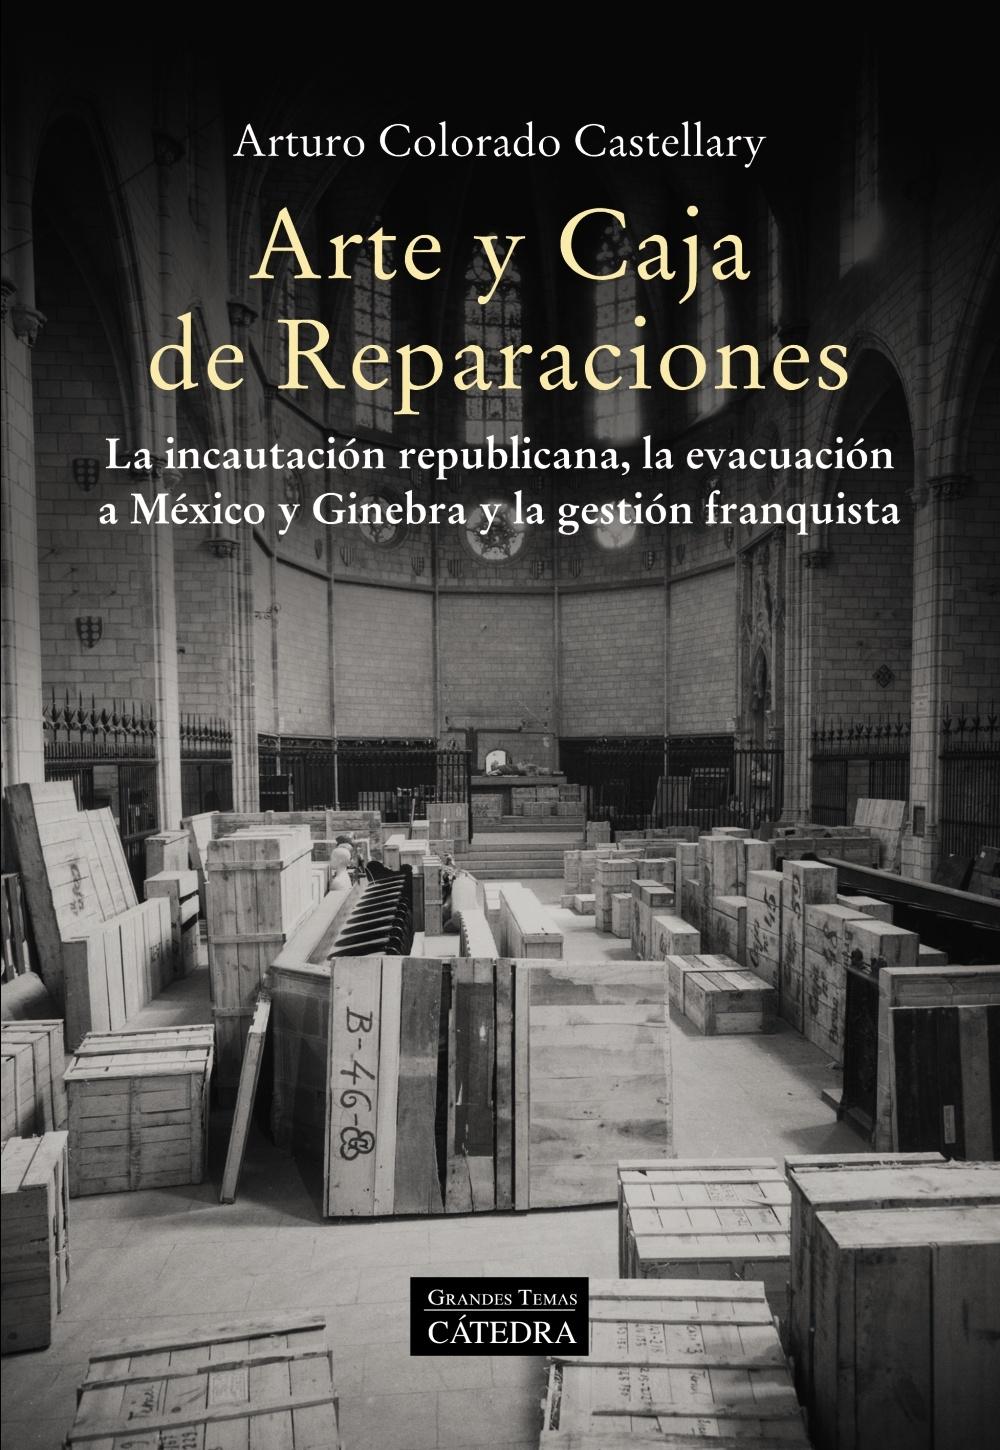 ARTE Y CAJA DE REPARACIONES "LA INCAUTACION REPUBLICANA, LA EVACUACION A MEXICO Y GINEBRA Y LA GESTION FRANQUISTA"